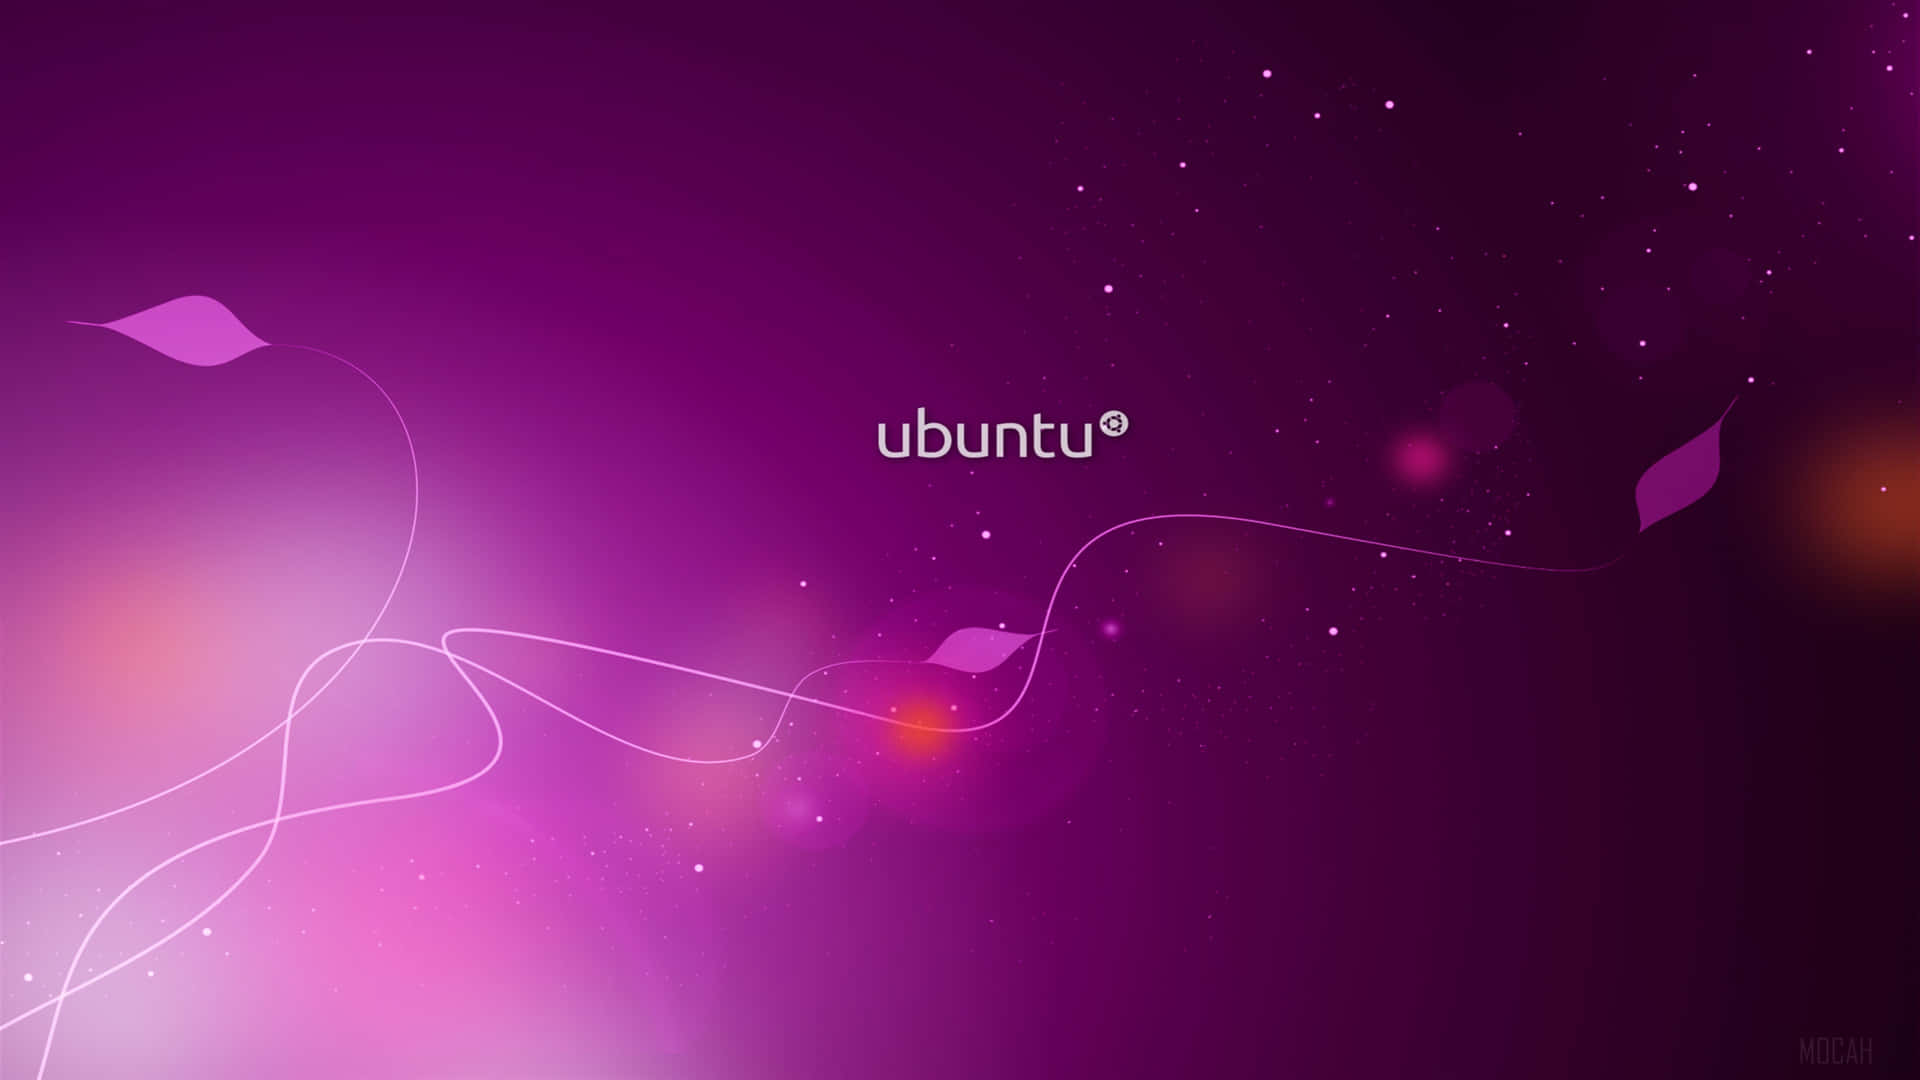 Bright and Colorful Ubuntu 4K Wallpaper Wallpaper